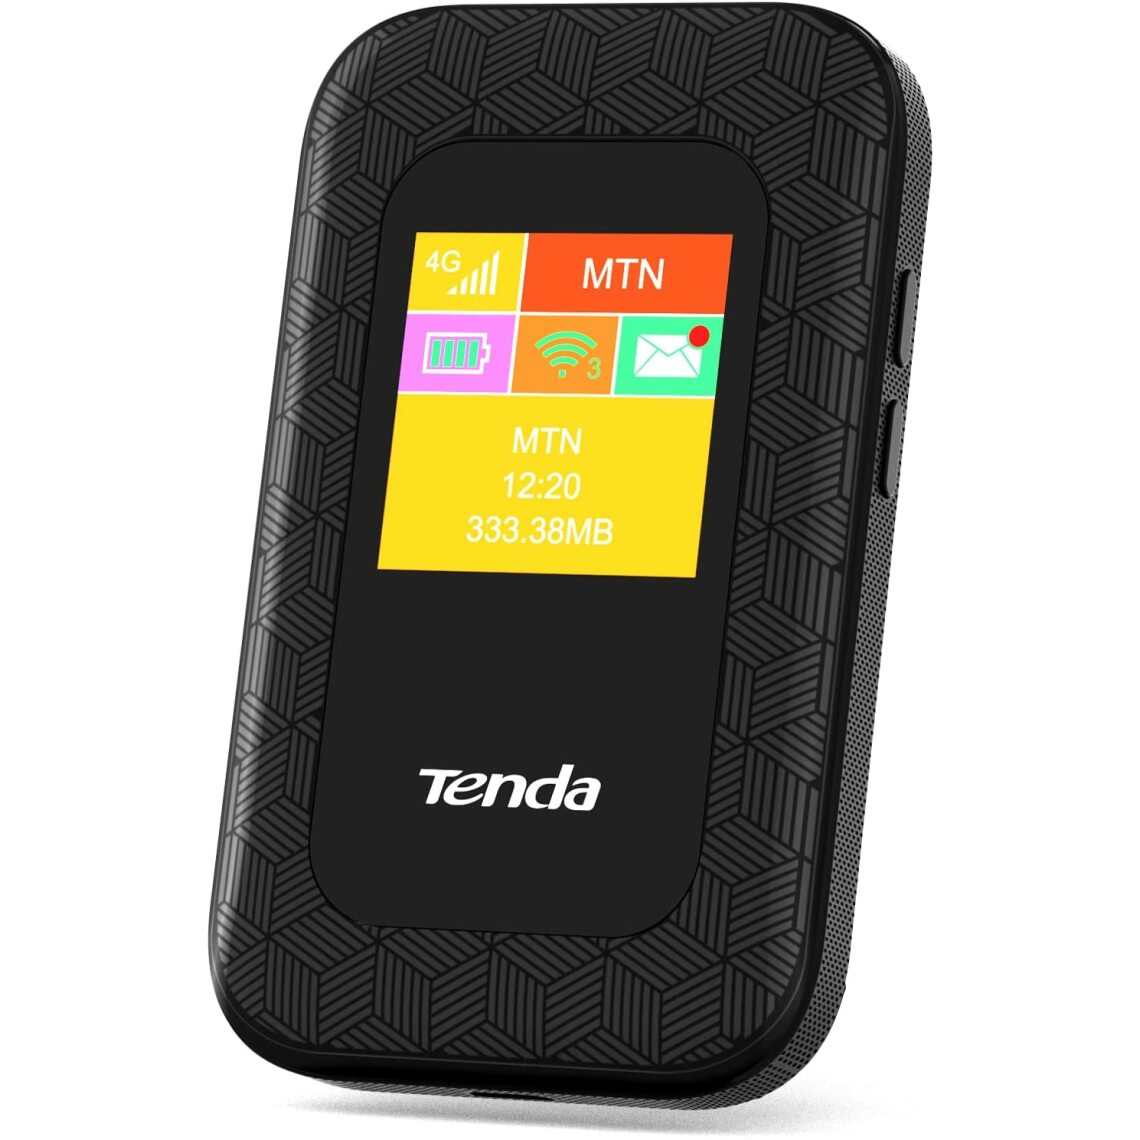 Tenda - Routeur mobile 4G LTE Cat4 150 Mbps -Tenda 4G185, hotspot wifi, batterie 2100mAh - Modem / Routeur / Points d'accès